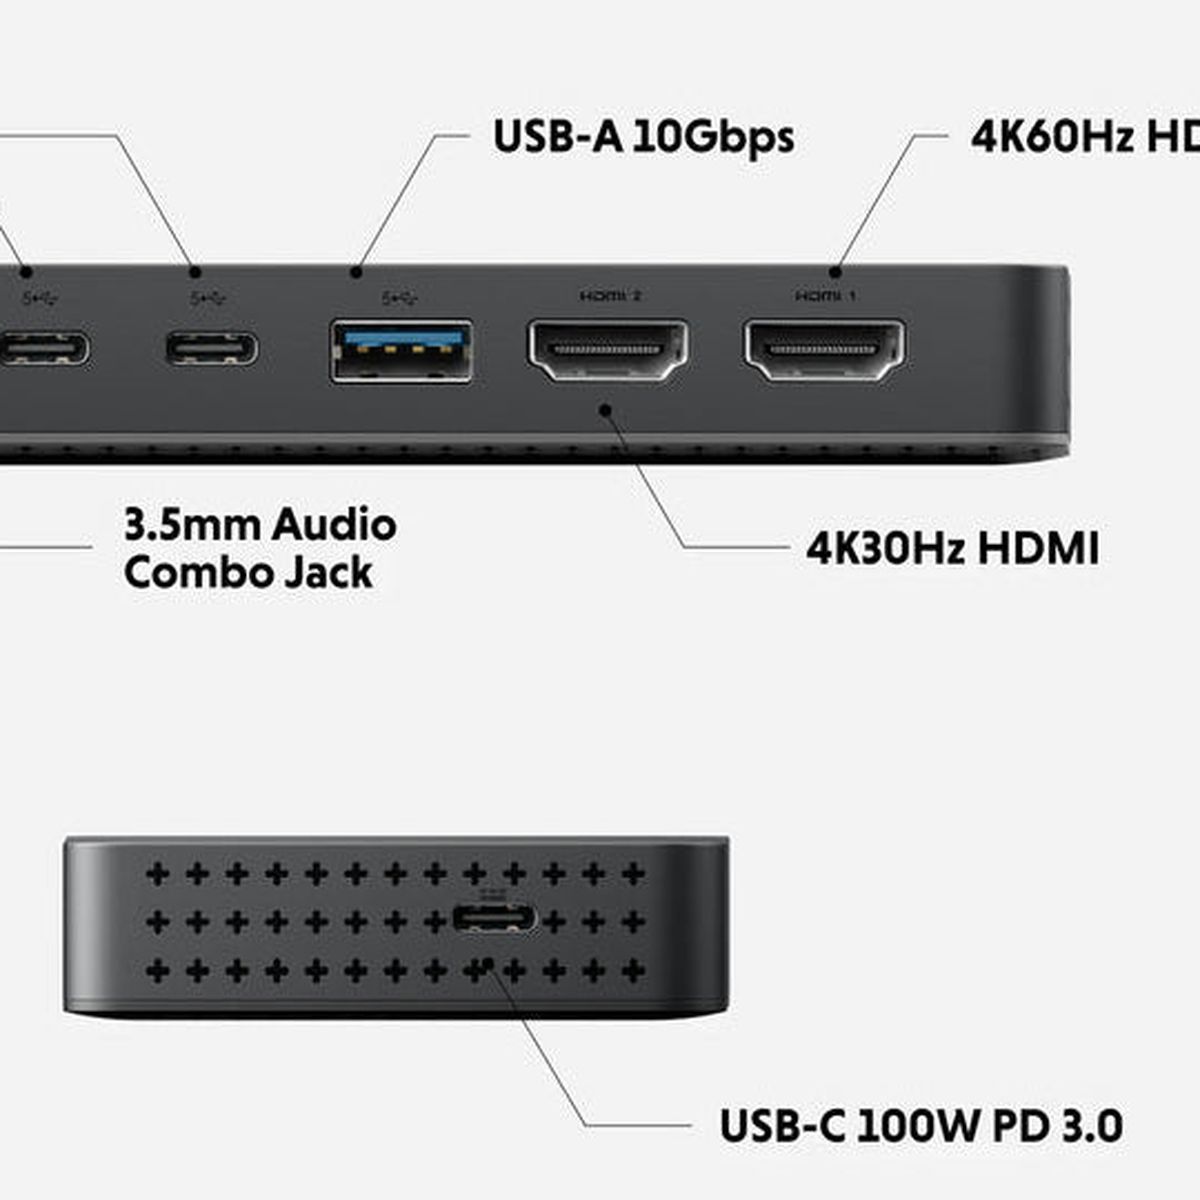 HyperDrive Next 10 Port Business Class USB-C Dock –